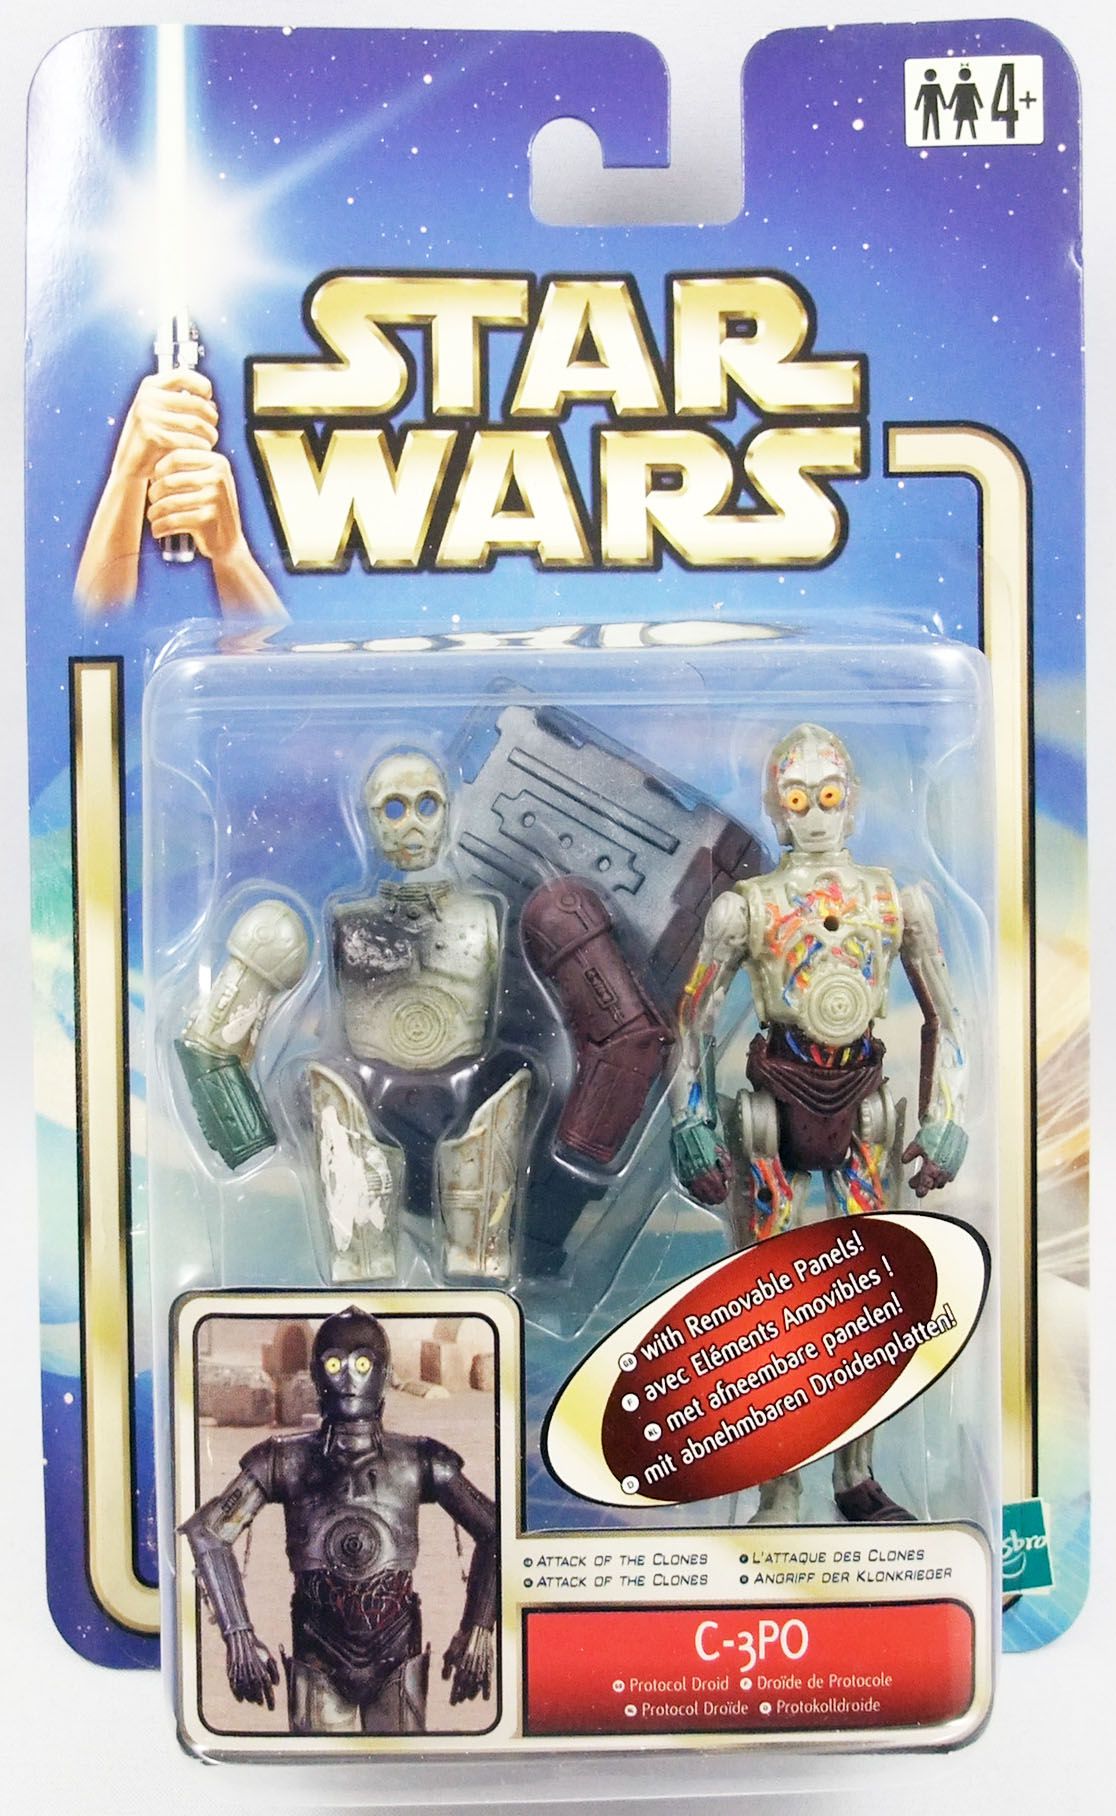 17.5.21.5  STAR WARS figurine Z6po C 3PO clone wars 2008 9cm 